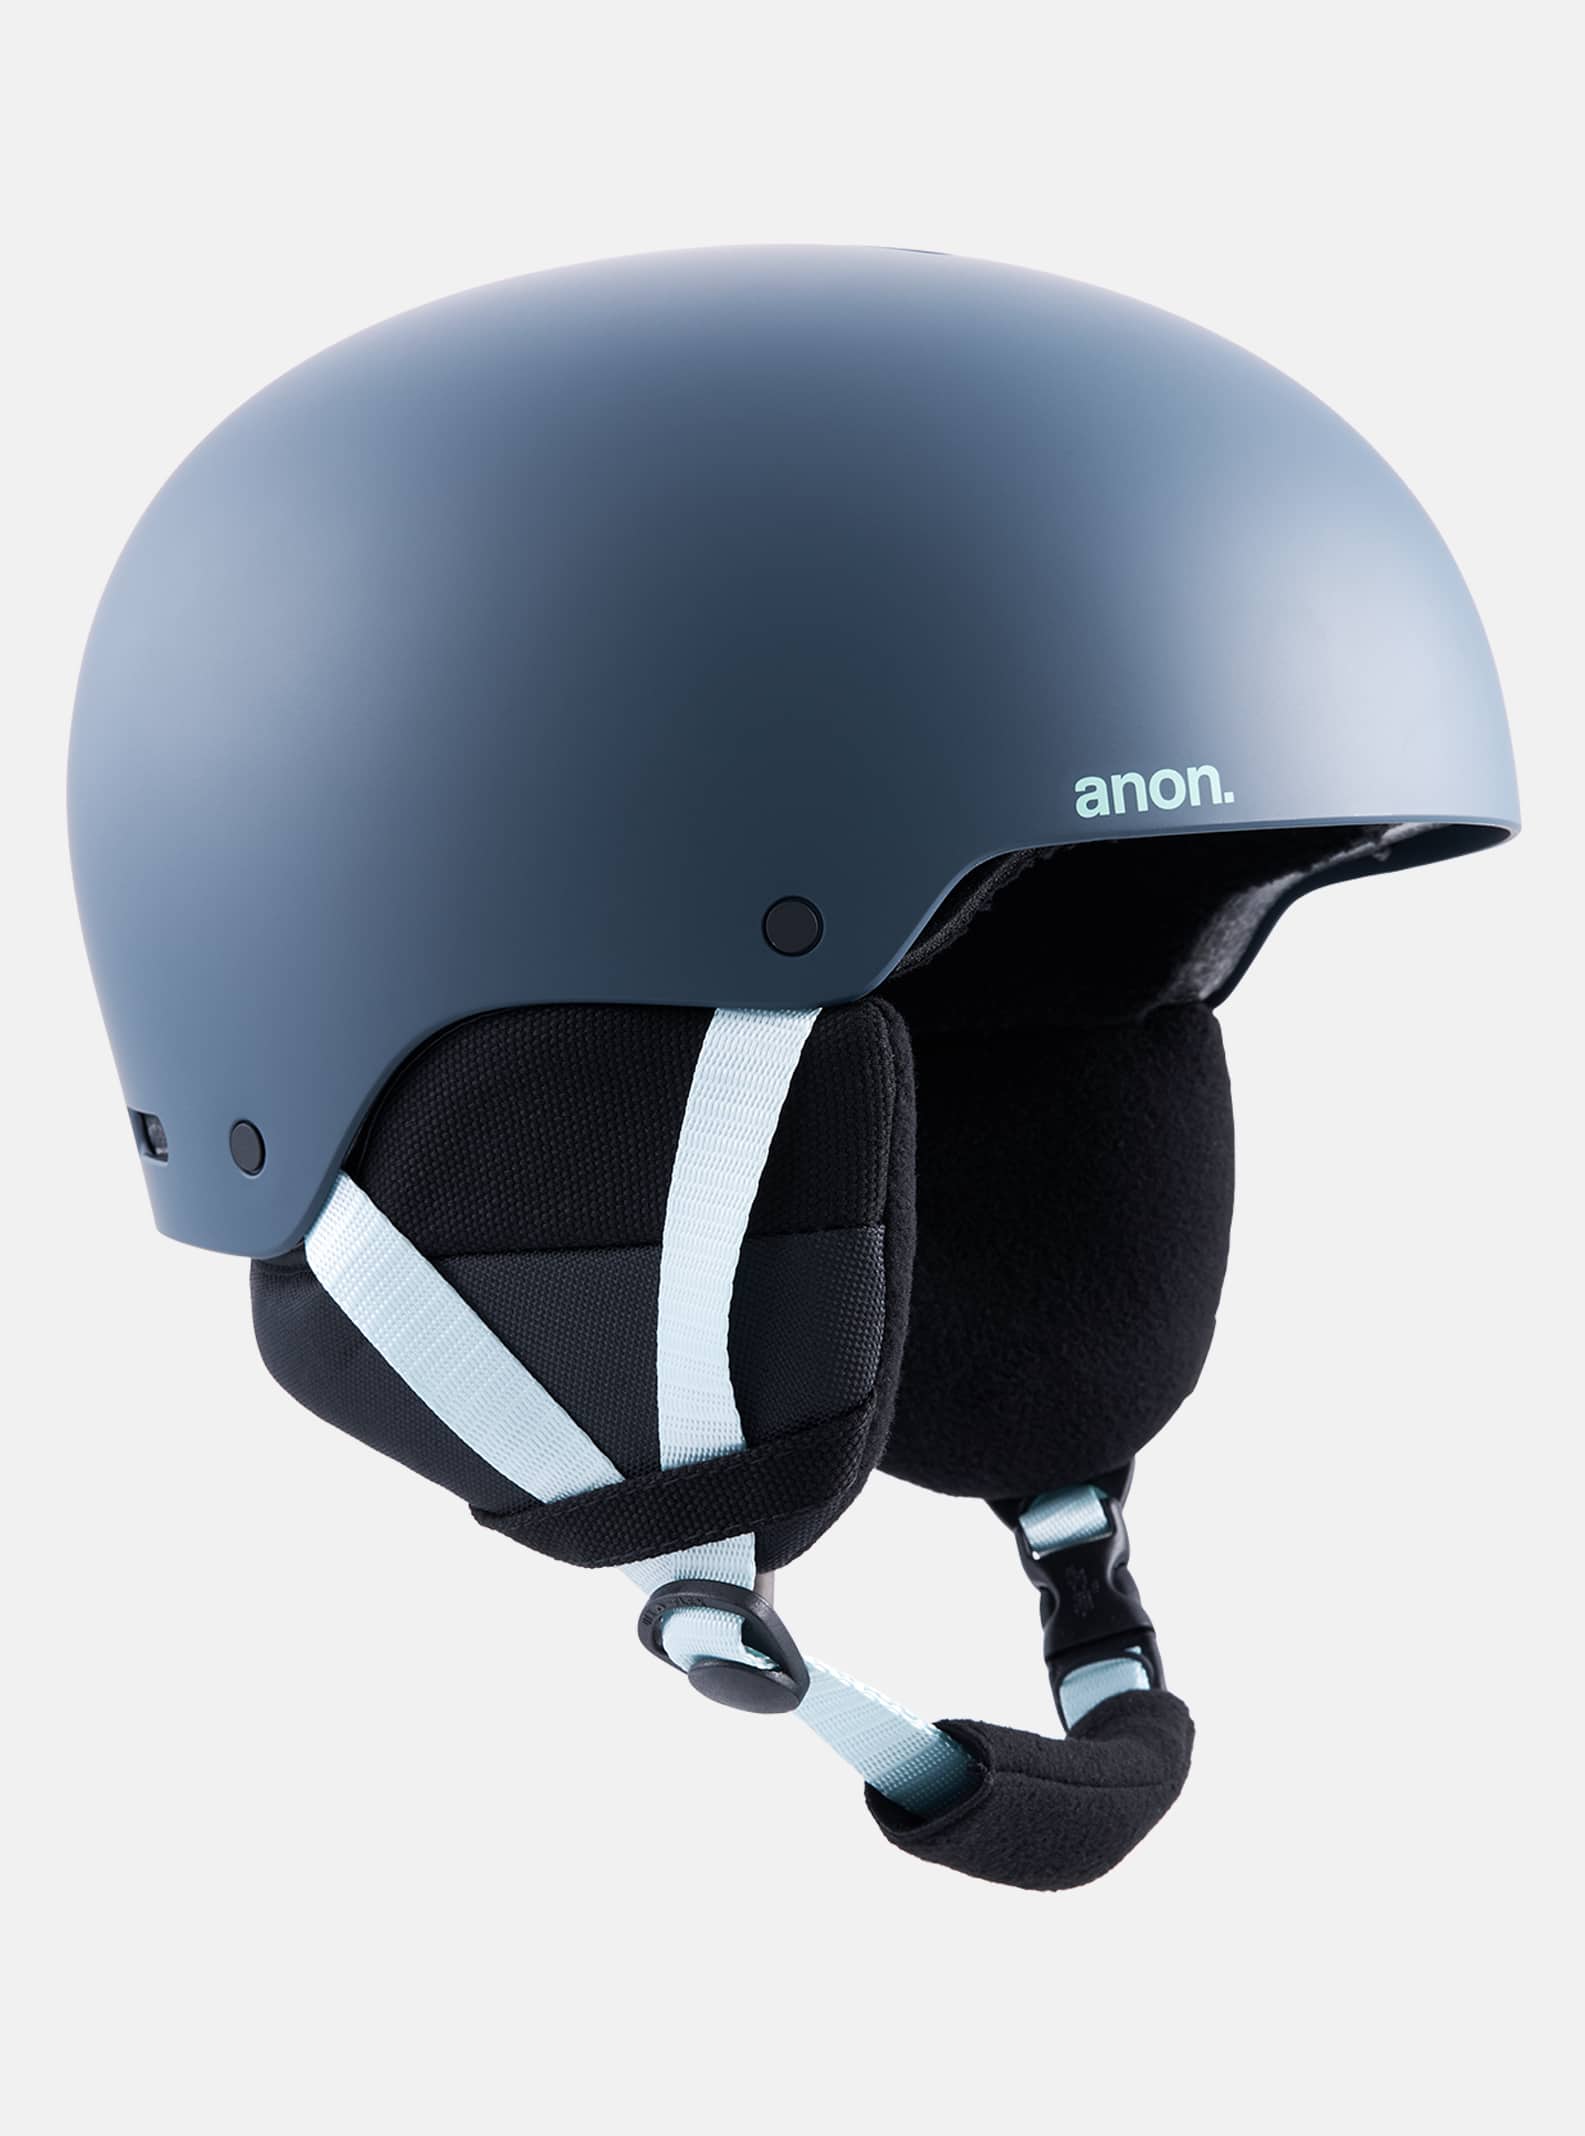 Anon Raider 3 Ski & Snowboard Helmet | Anon Optics Winter 2023 US